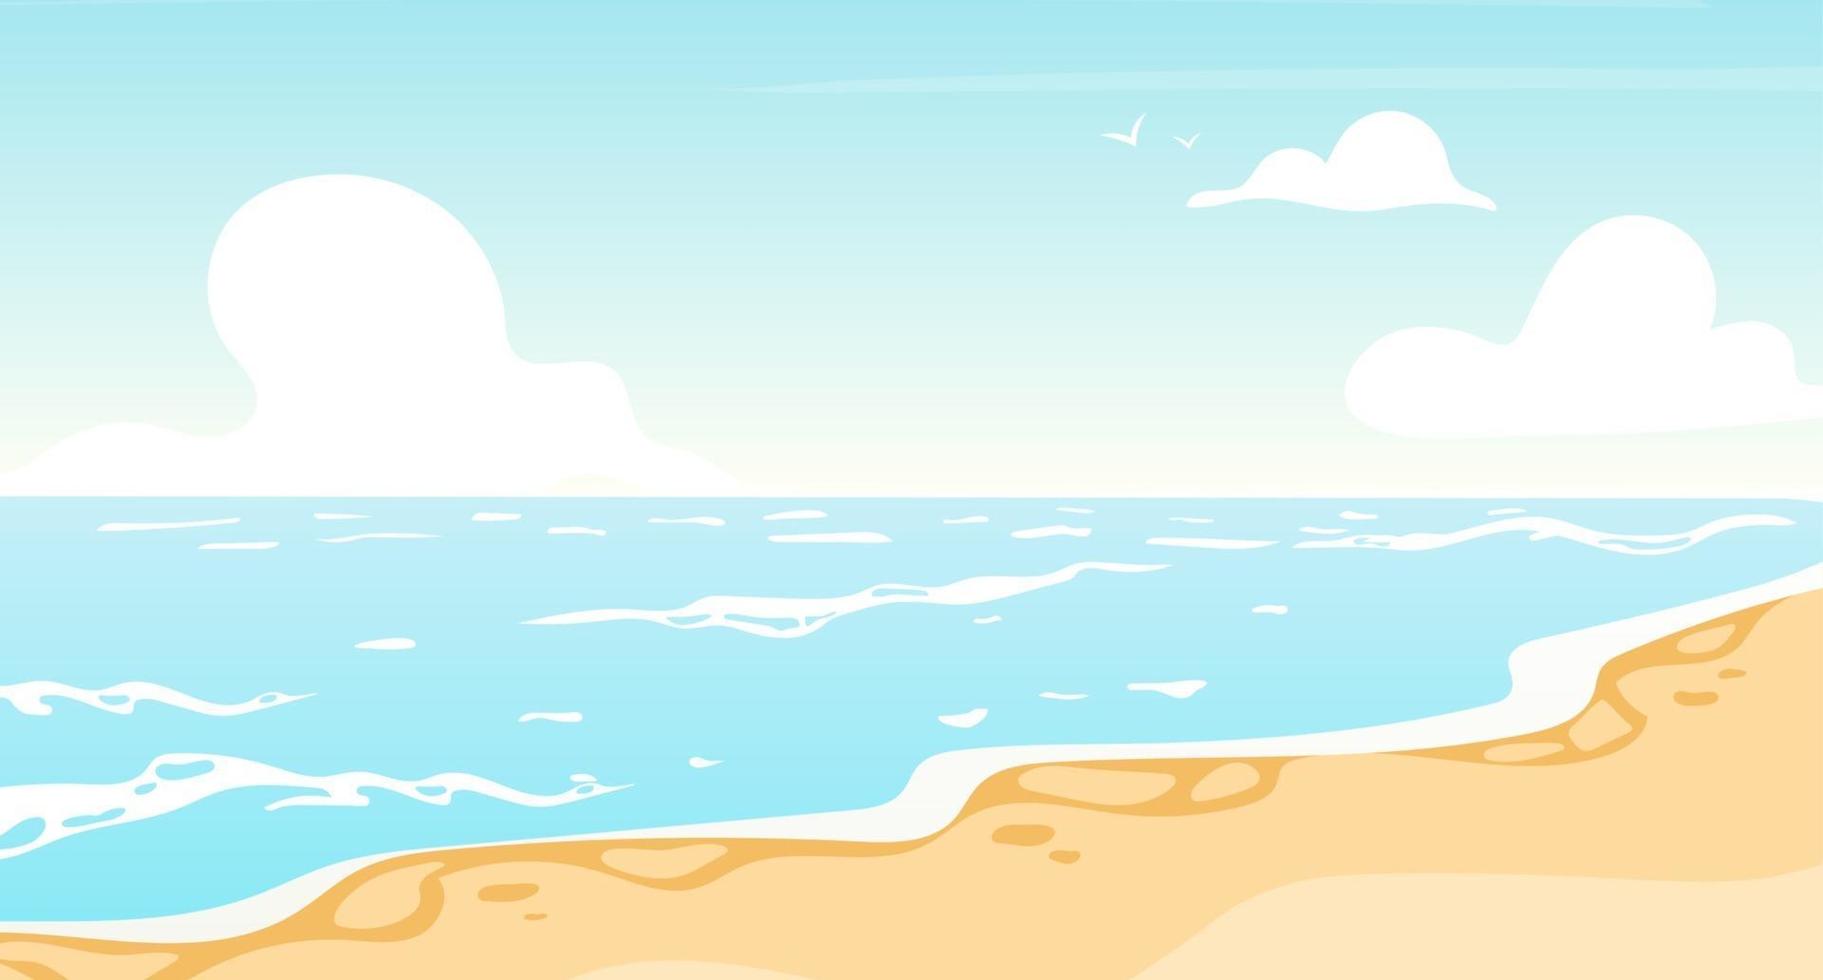 illustrazione vettoriale piatto piatto da spiaggia. oceano estivo, scenografia sullo sfondo del mare. luogo di villeggiatura, costa dell'isola. paradiso soleggiato, laguna turchese. sfondo cartone animato paesaggio marino, carta da parati